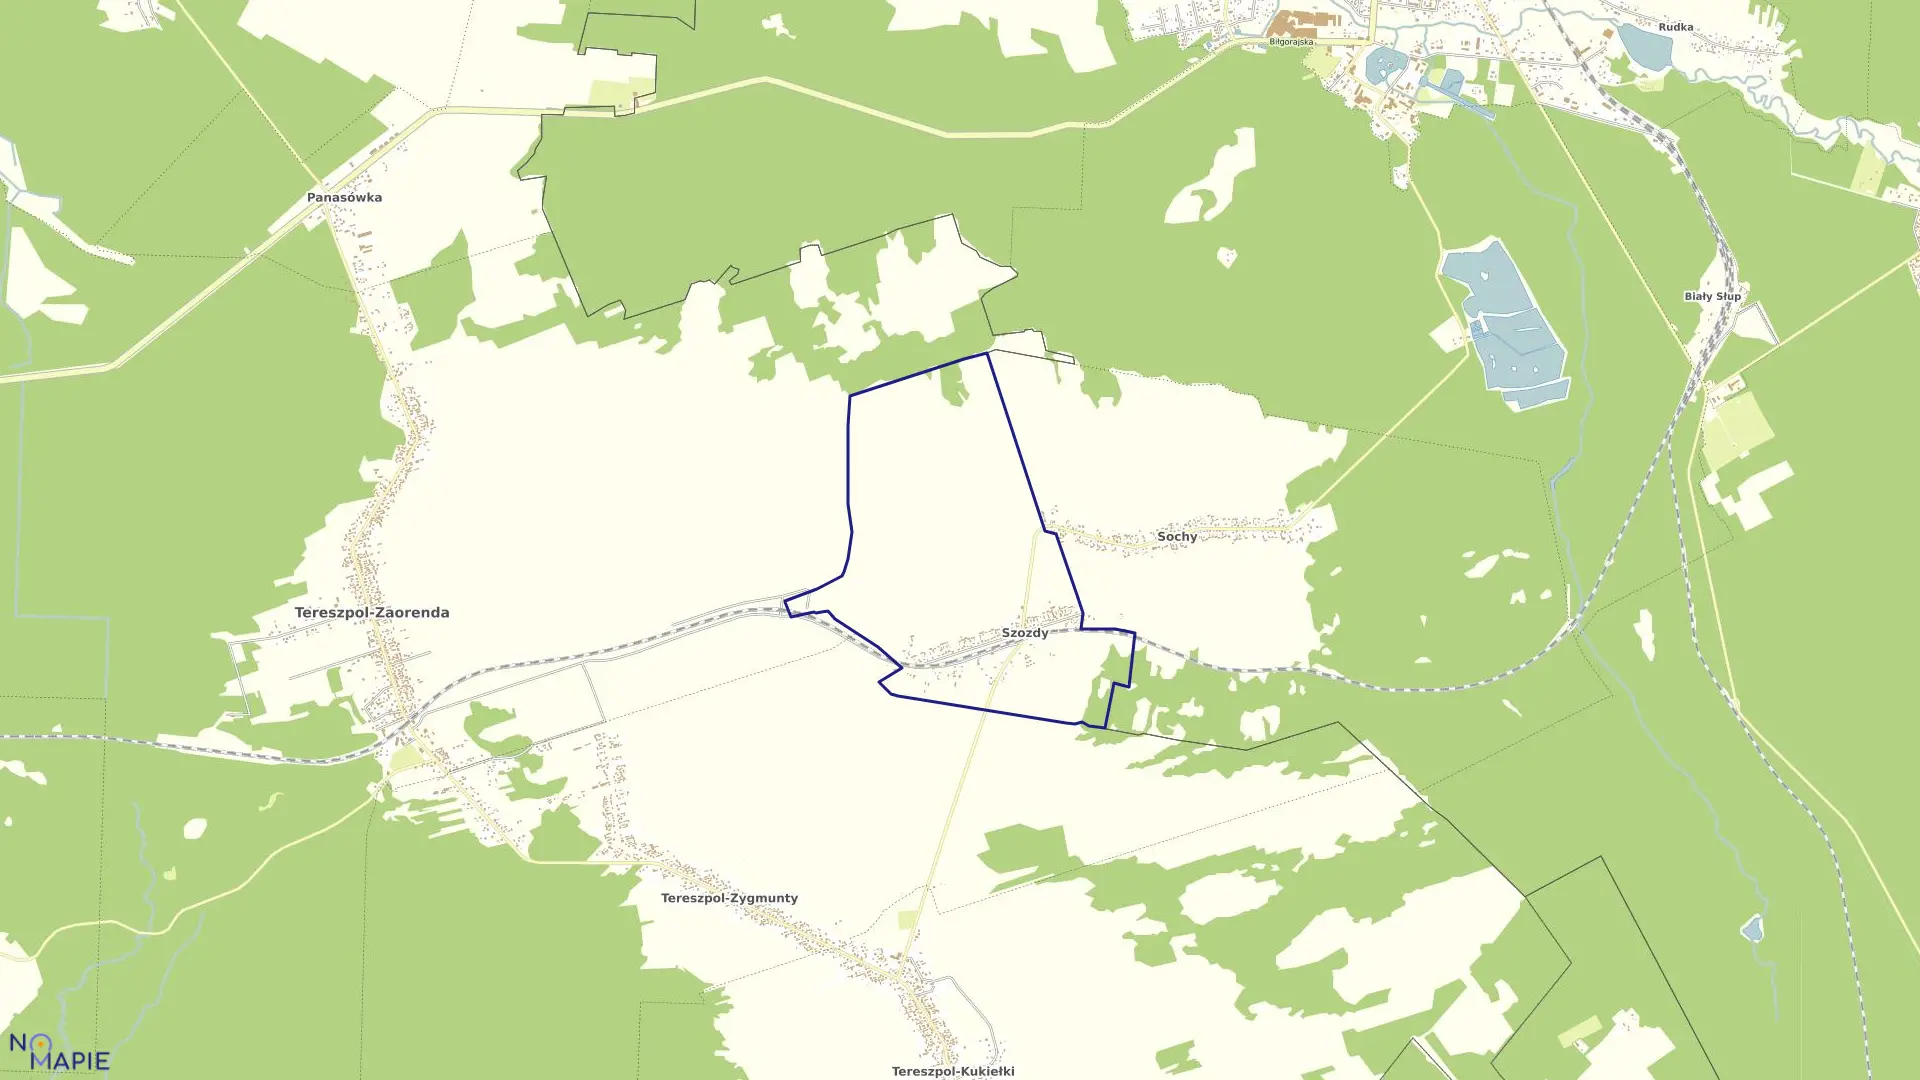 Mapa obrębu SZOZDY w gminie tereszpol